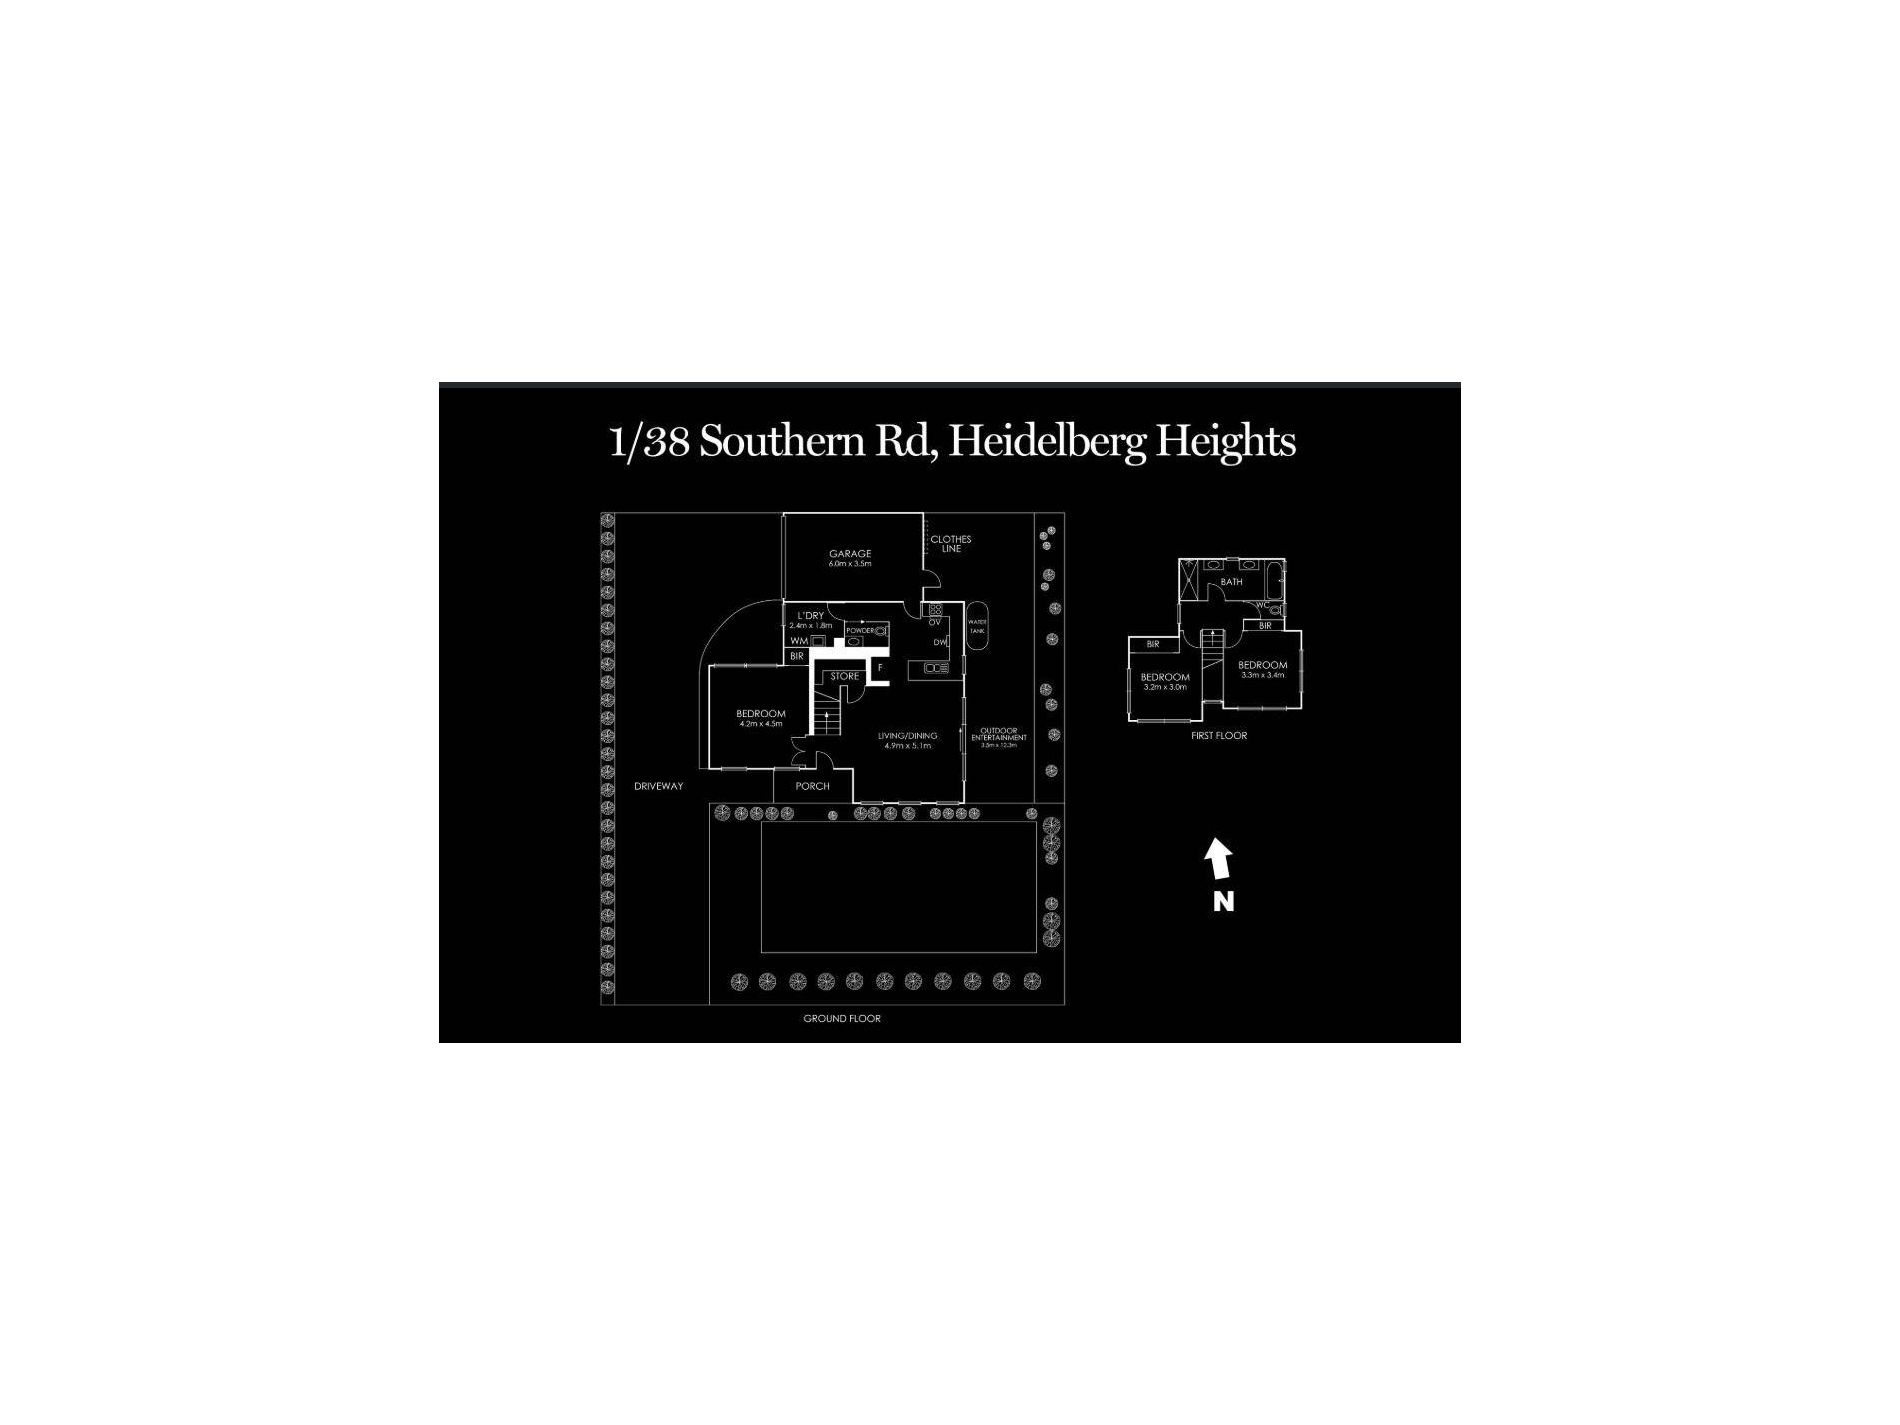 1 / 38 Southern Road, Heidelberg Heights Floor Plan